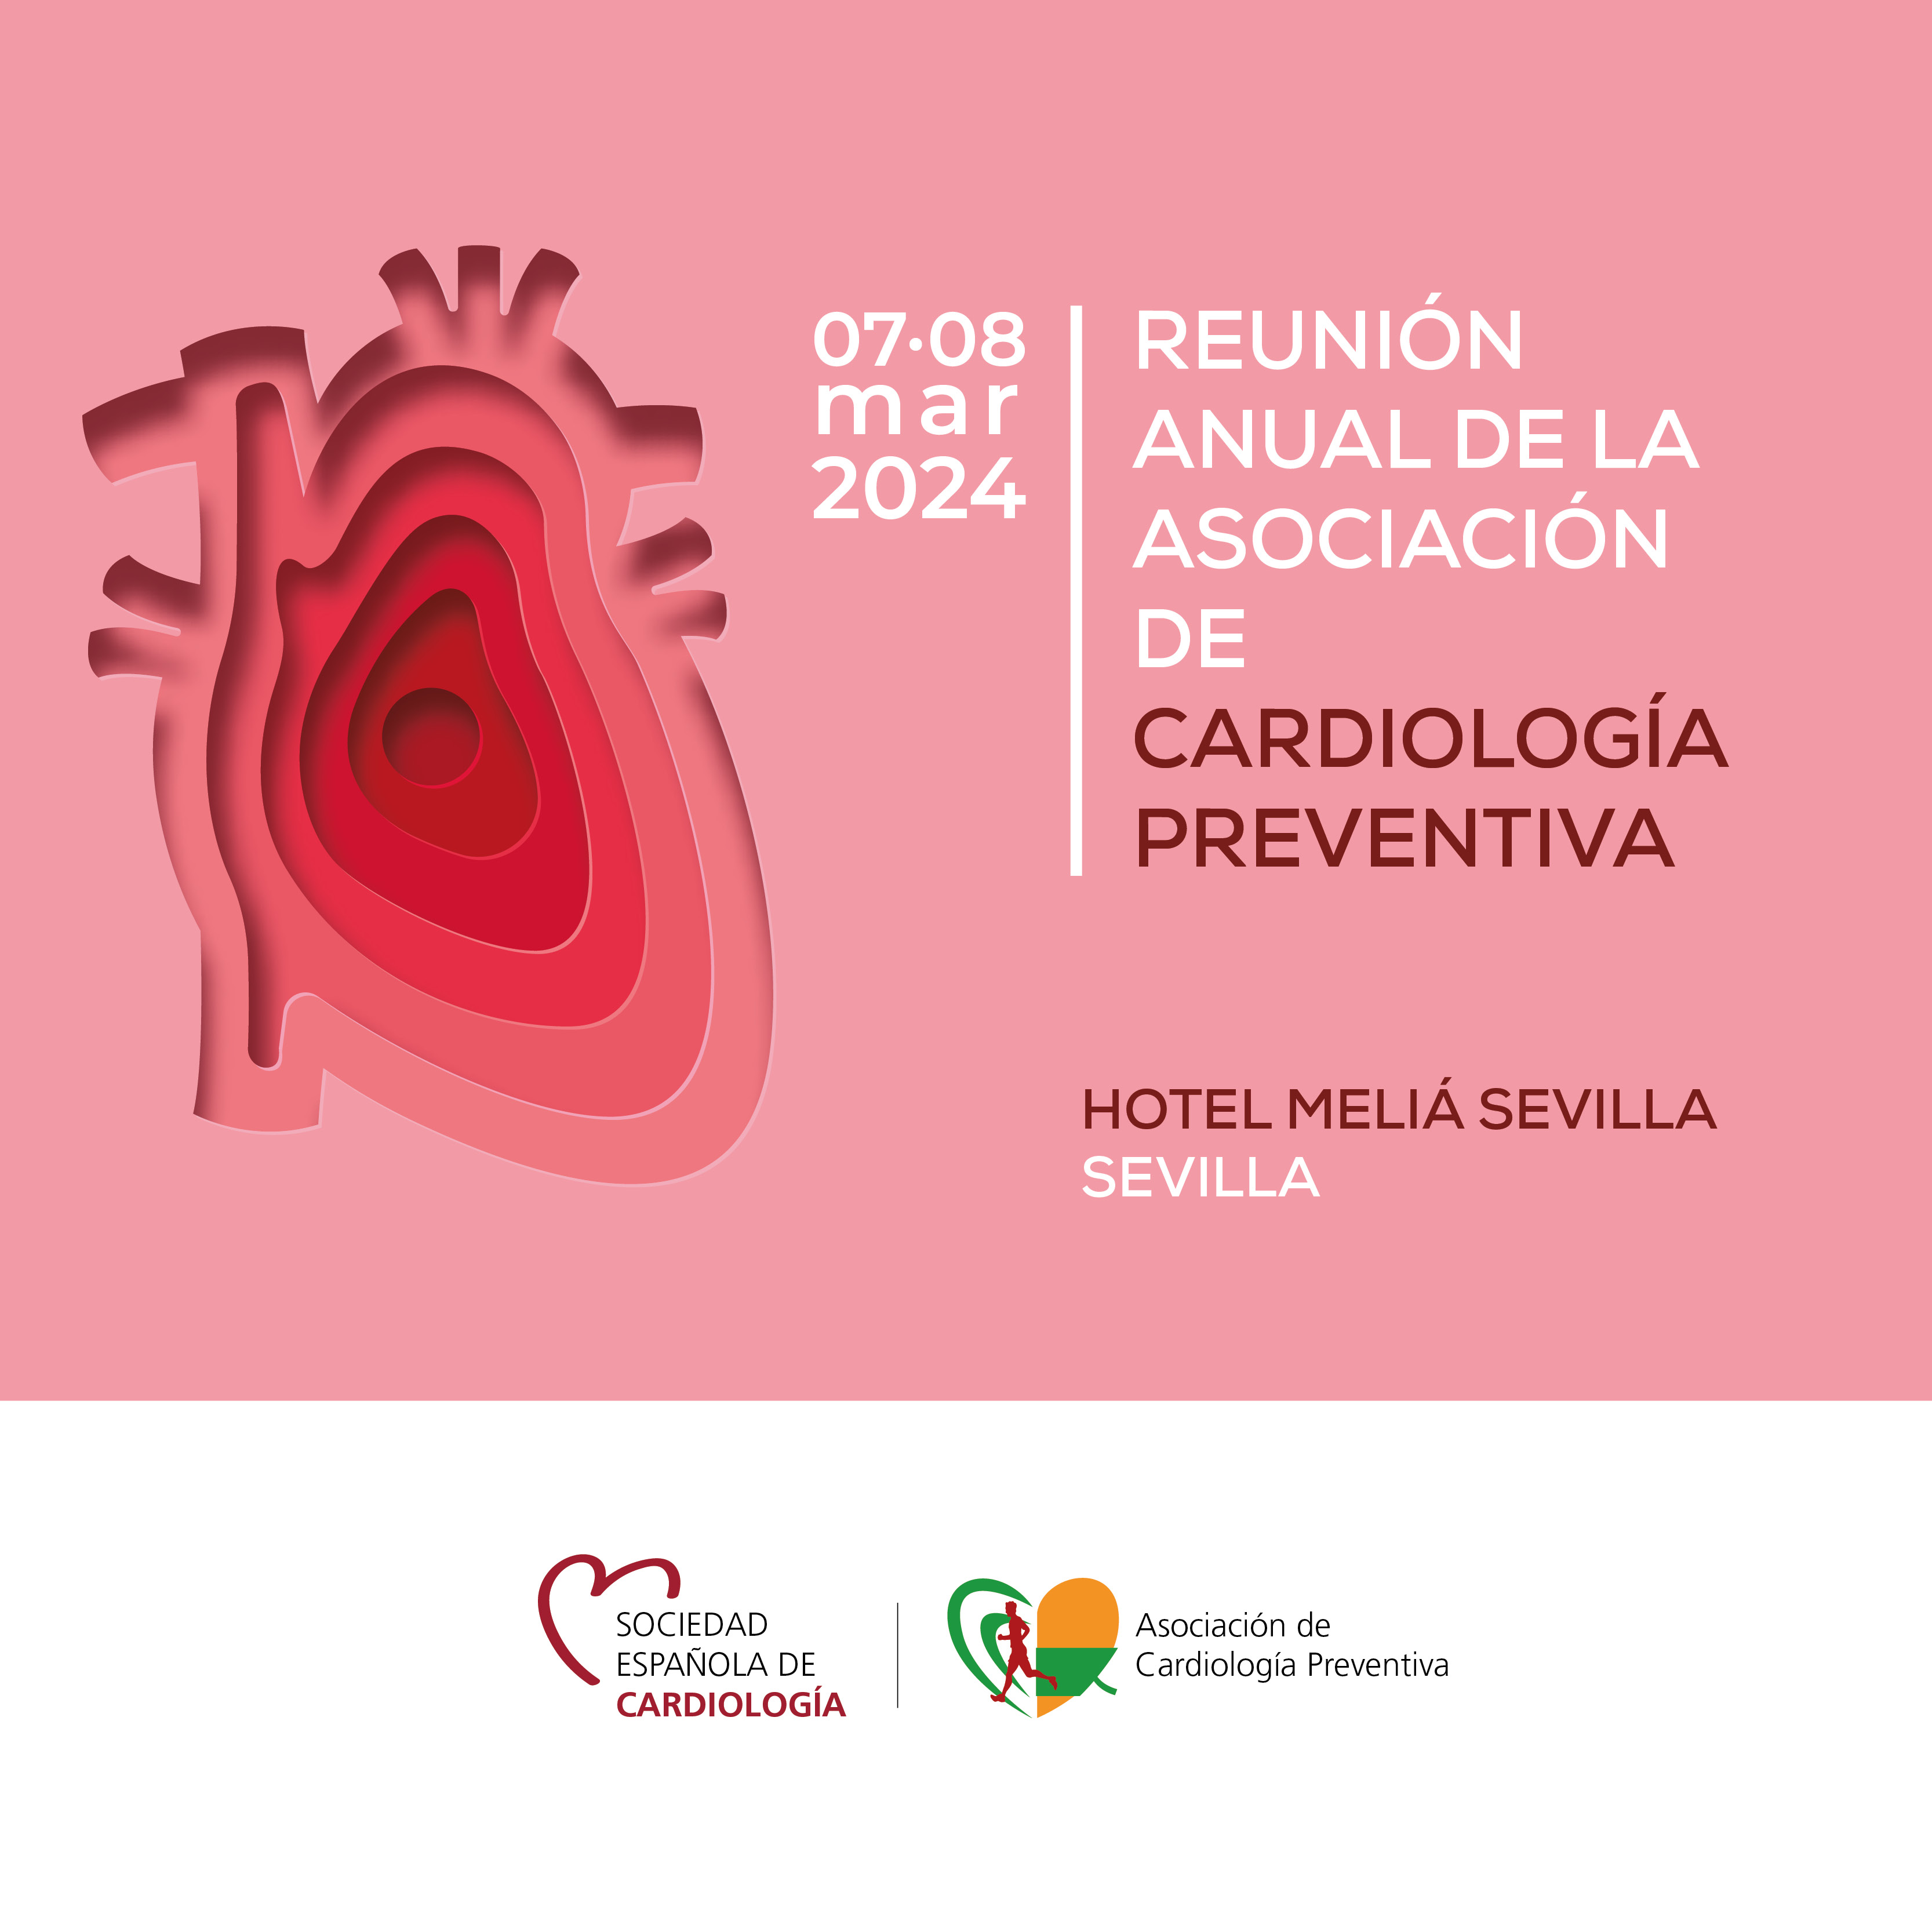 Reunión anual de la Asociación de Cardiología Preventiva